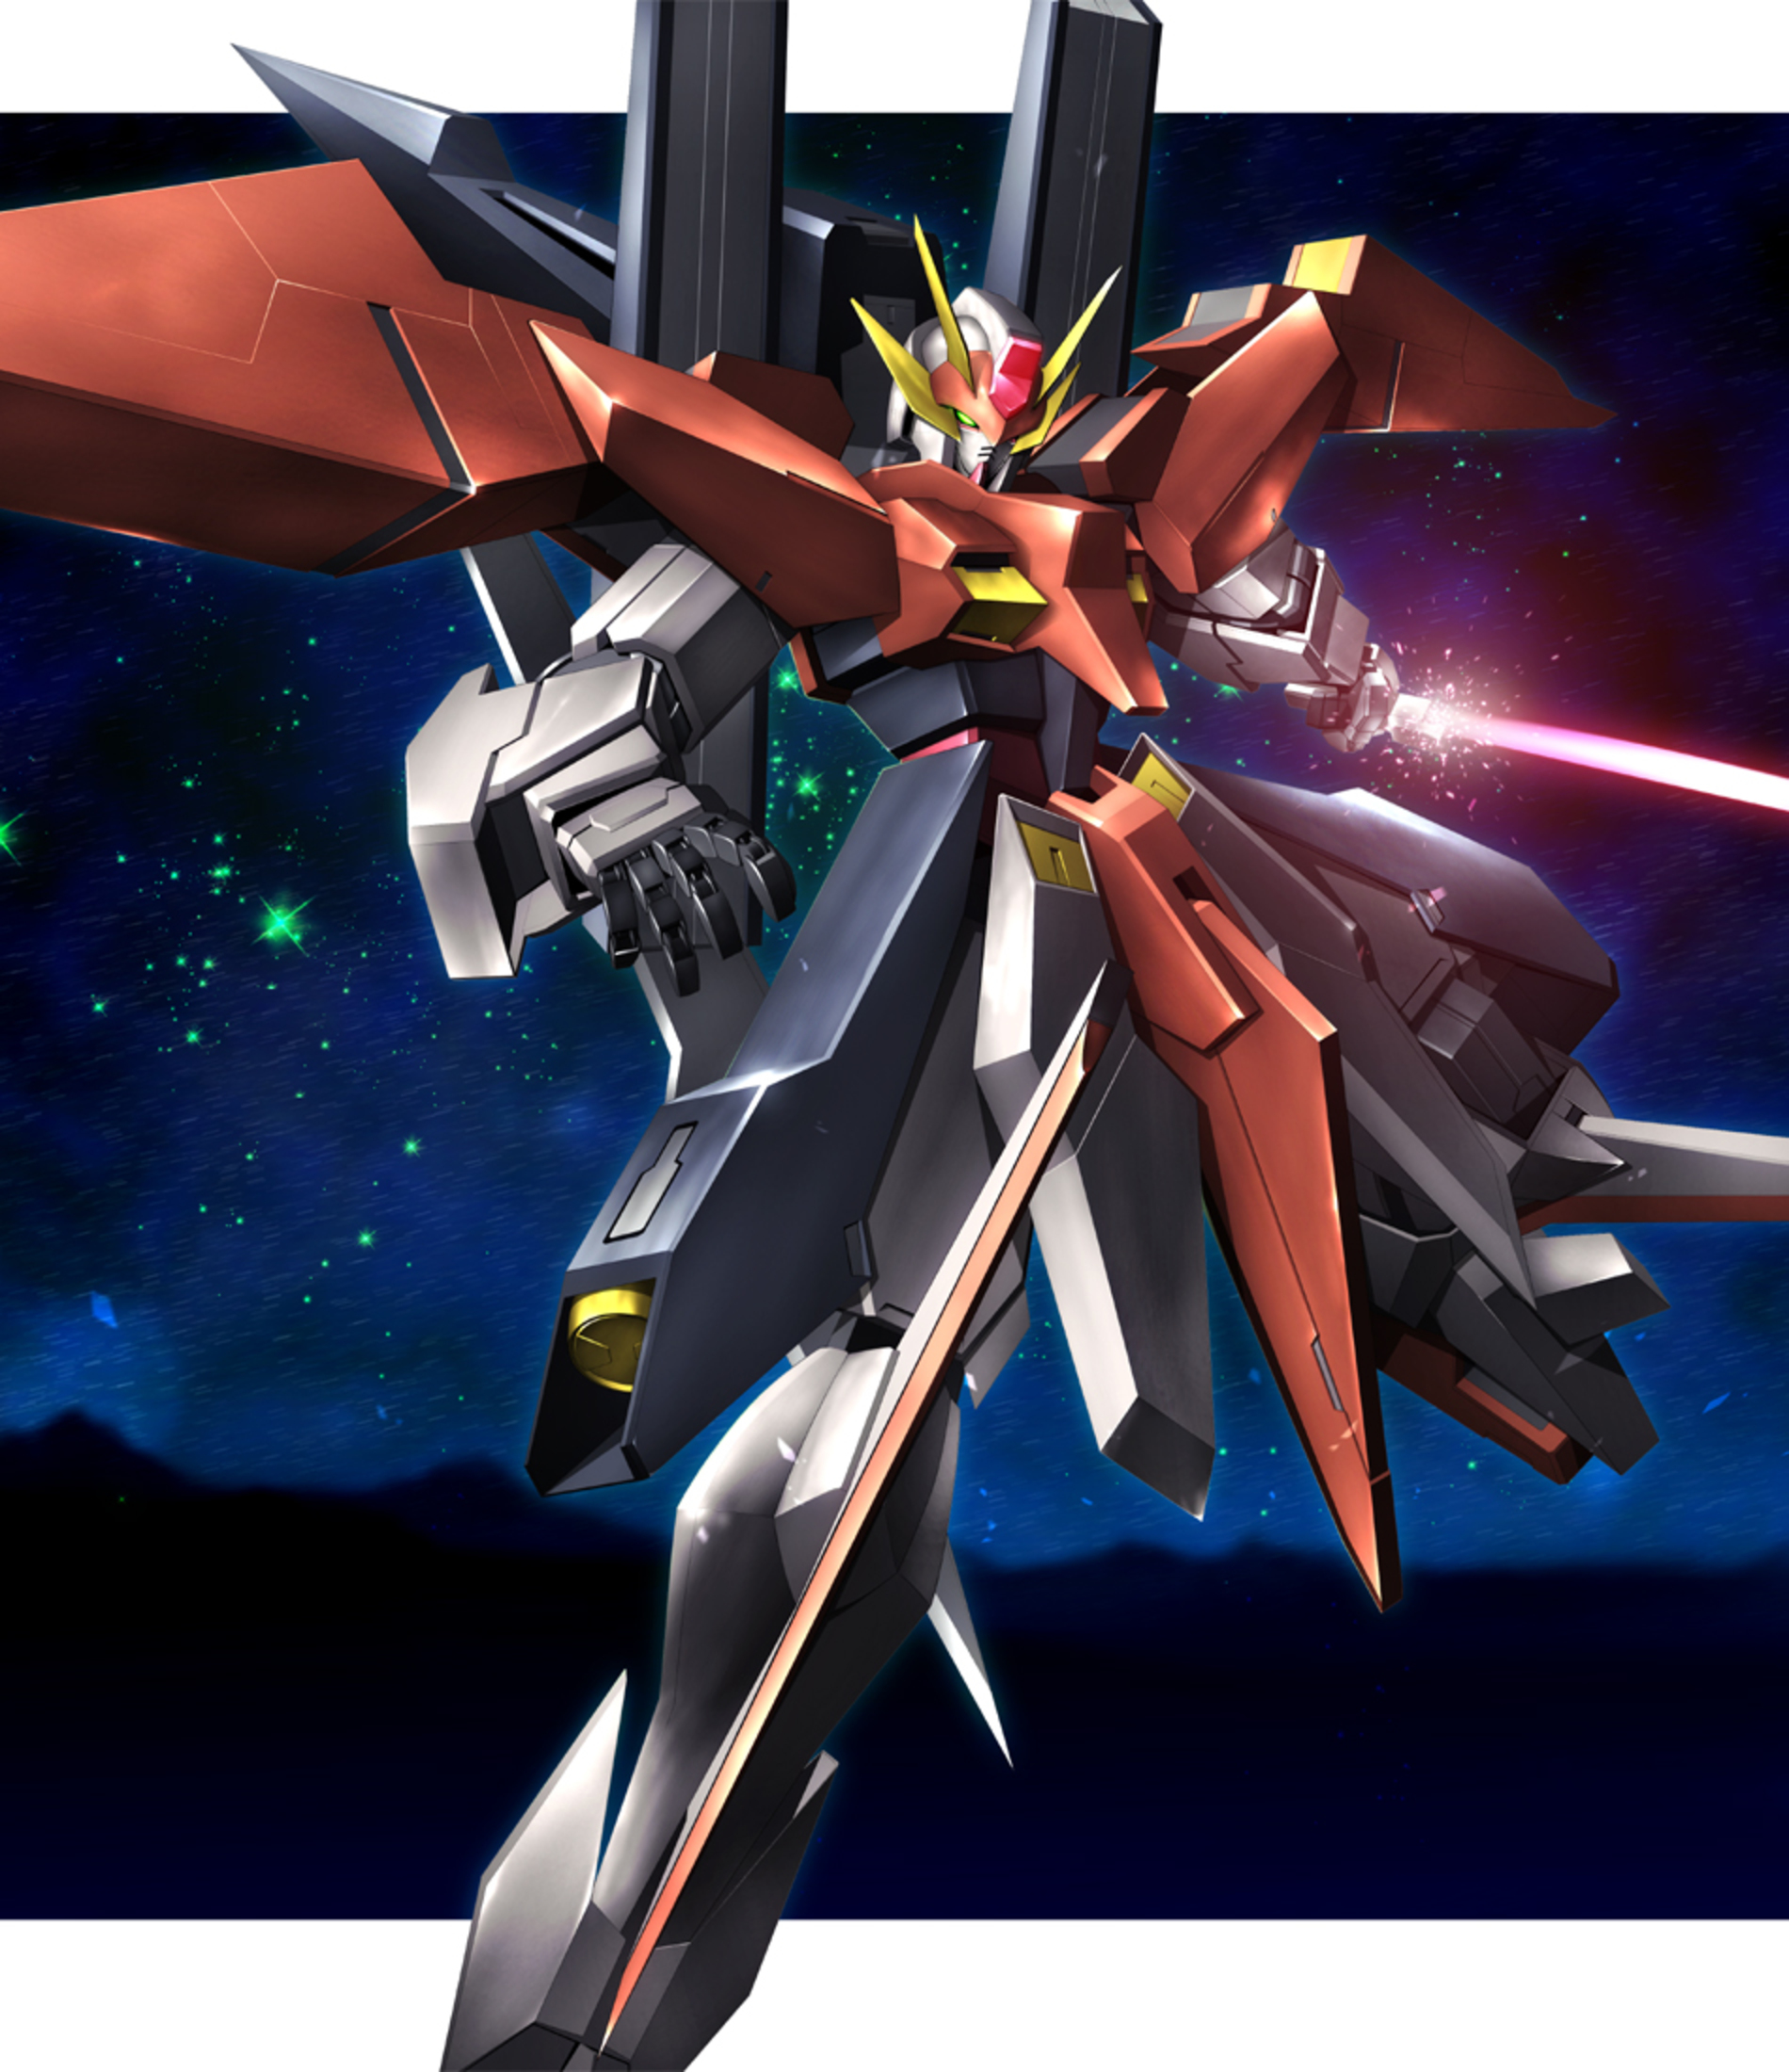 Anime 1900x2200 Arios Gundam anime mechs Gundam Super Robot Taisen Mobile Suit Gundam 00 artwork digital art fan art